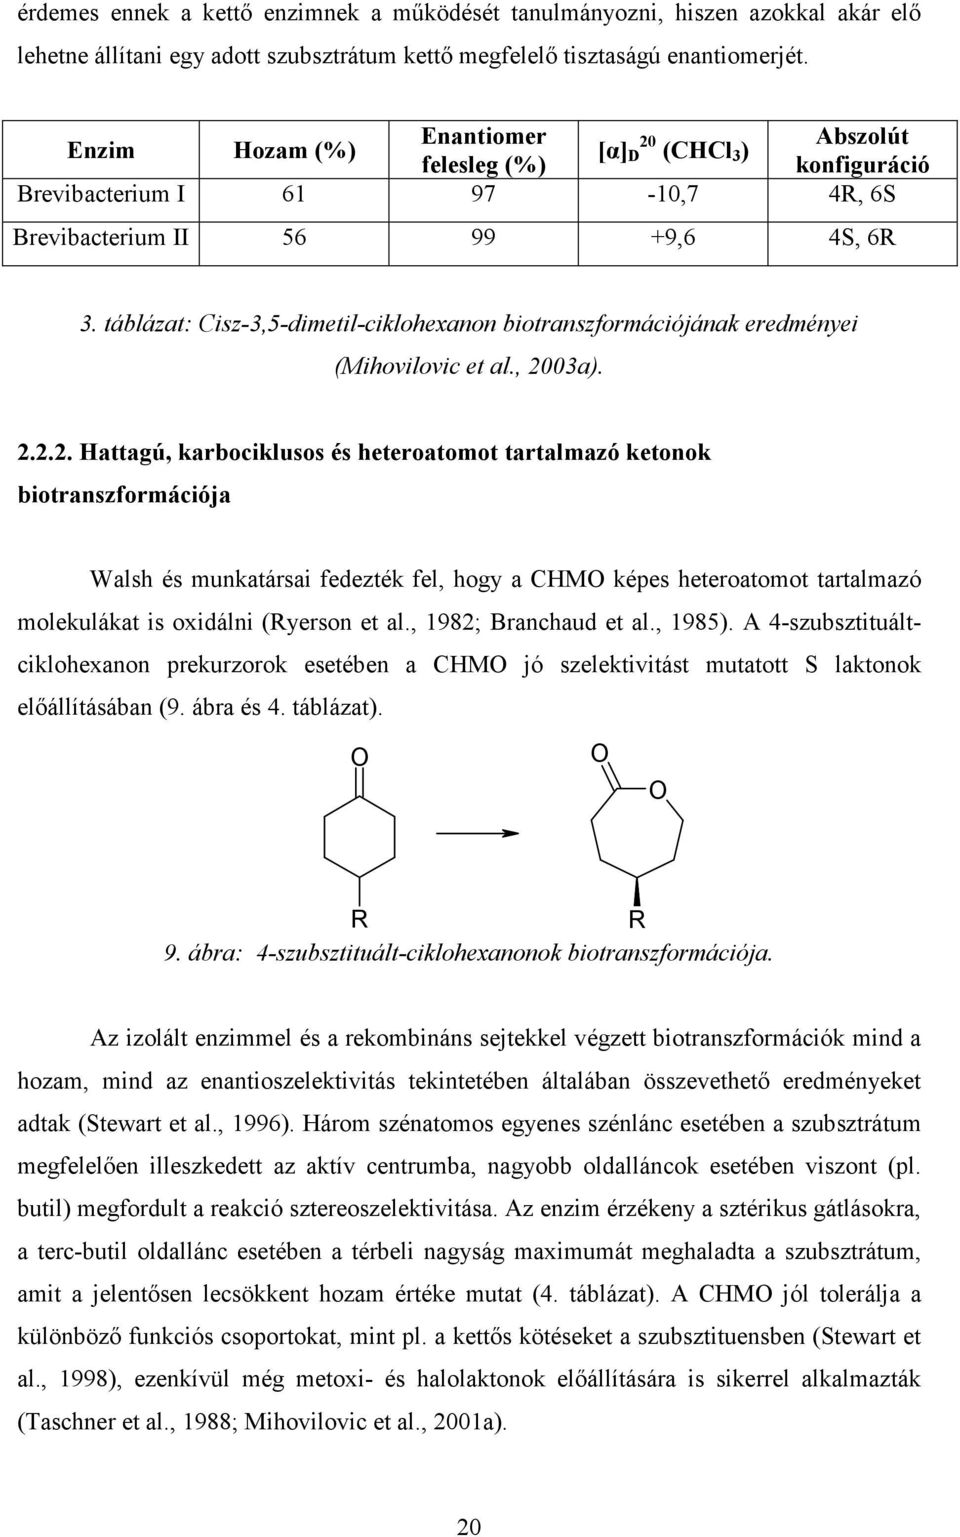 táblázat: Cisz-3,5-dimetil-ciklohexanon biotranszformációjának eredményei (Mihovilovic et al., 20